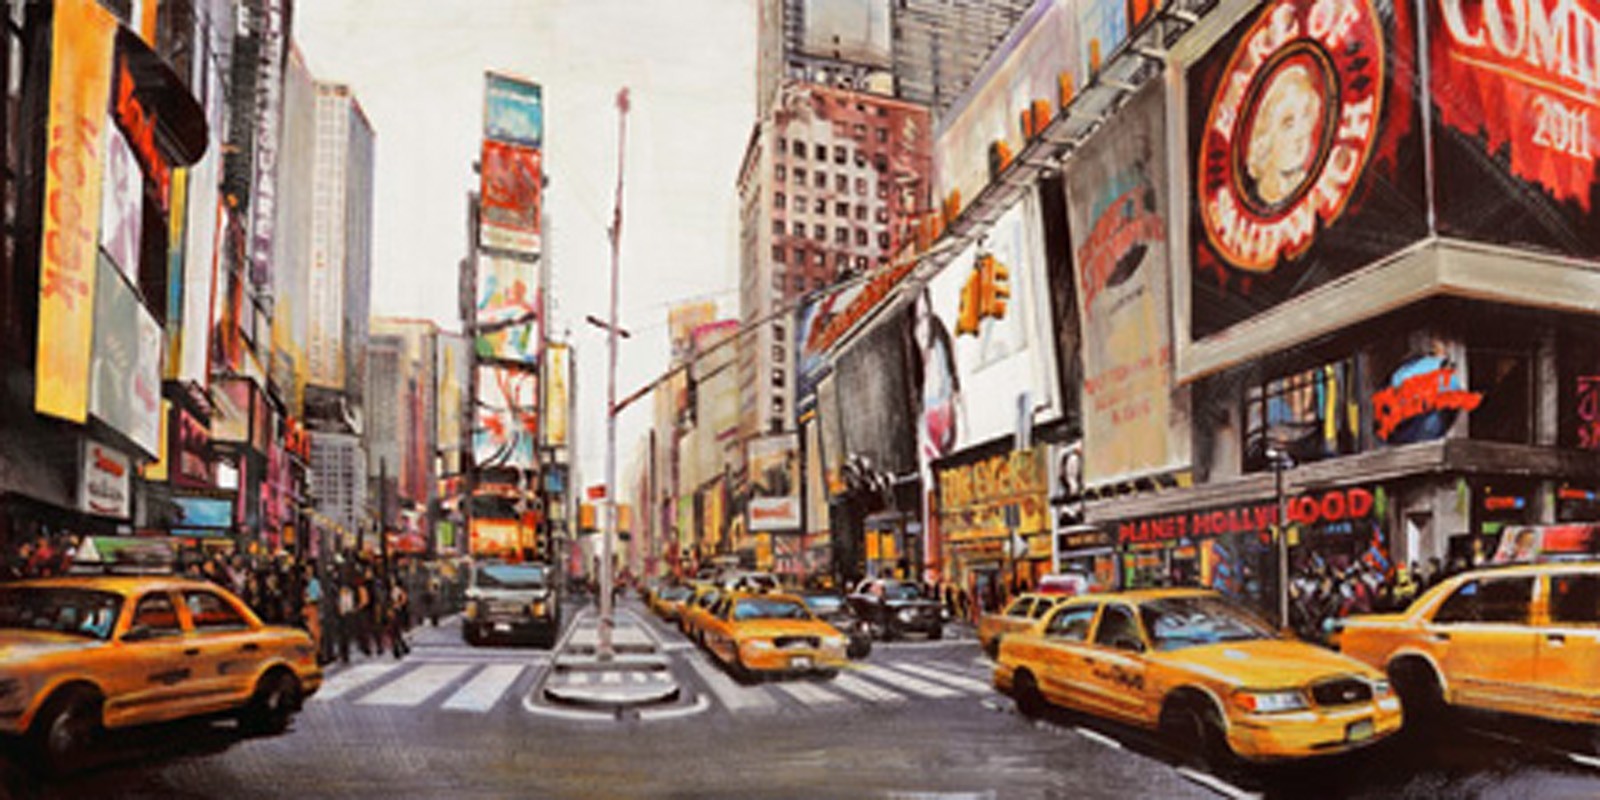 John B. Mannarini - Times Square Perspective